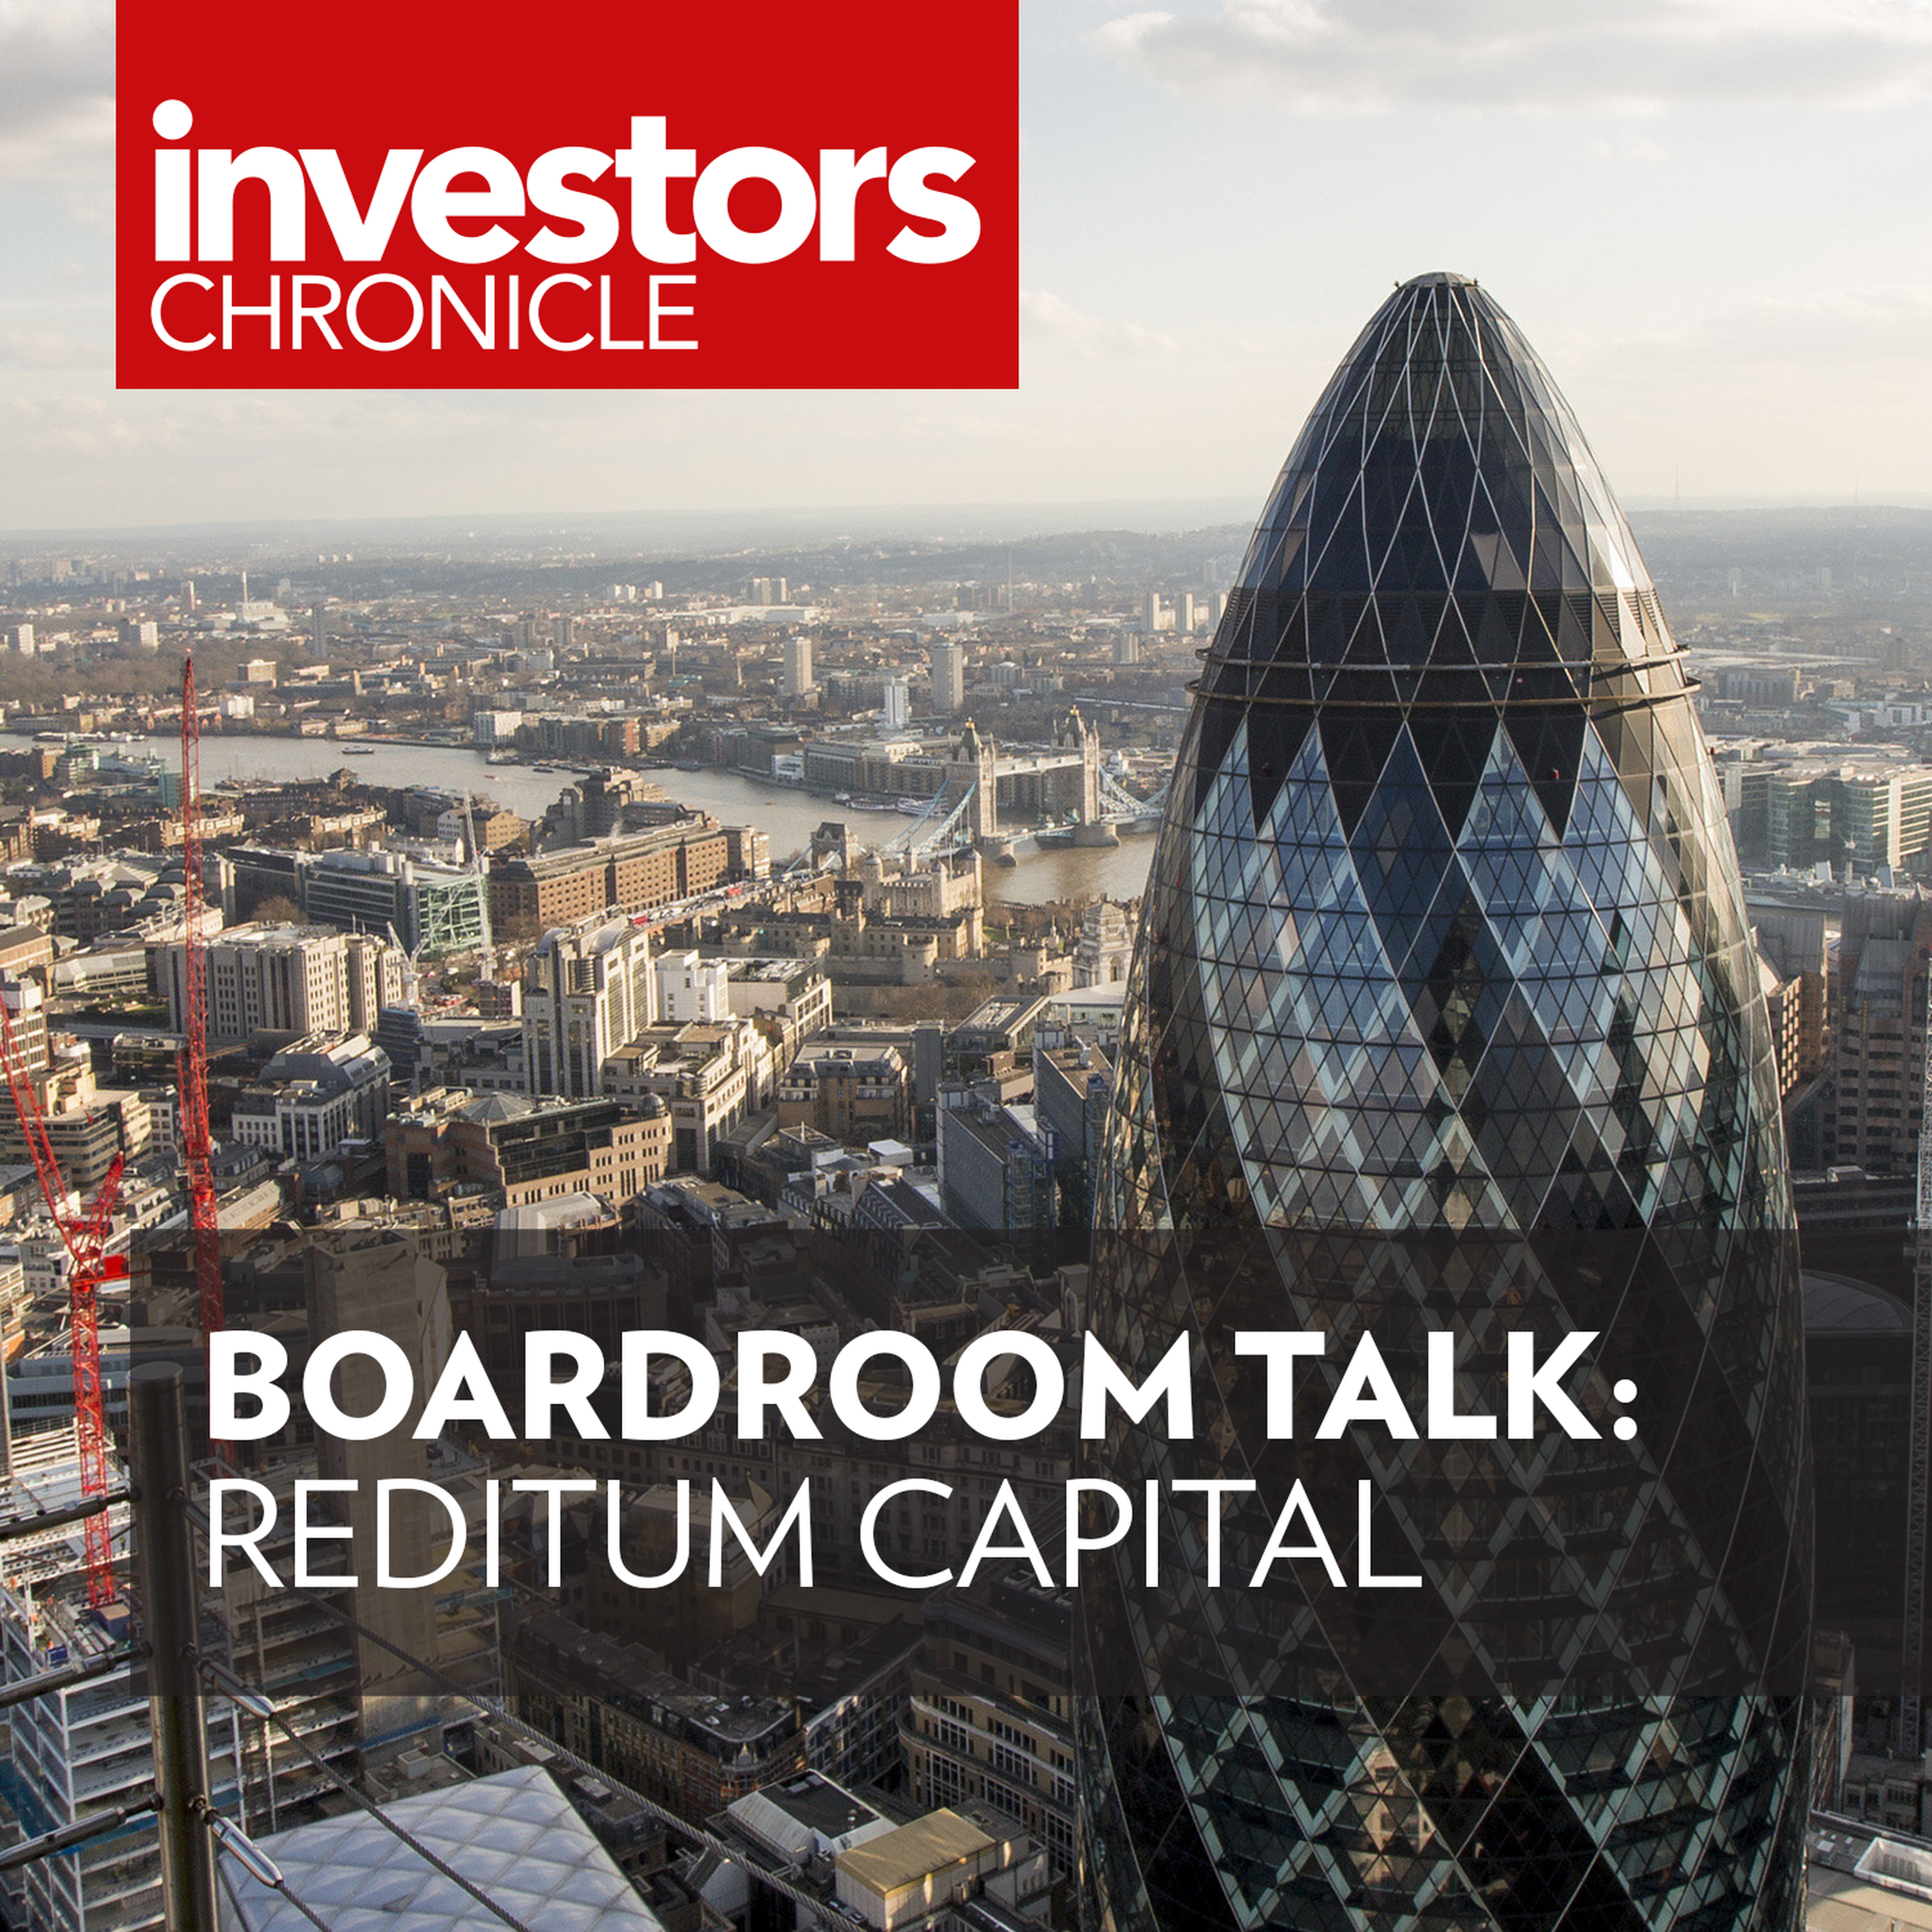 Boardroom Talk: Reditum Capital